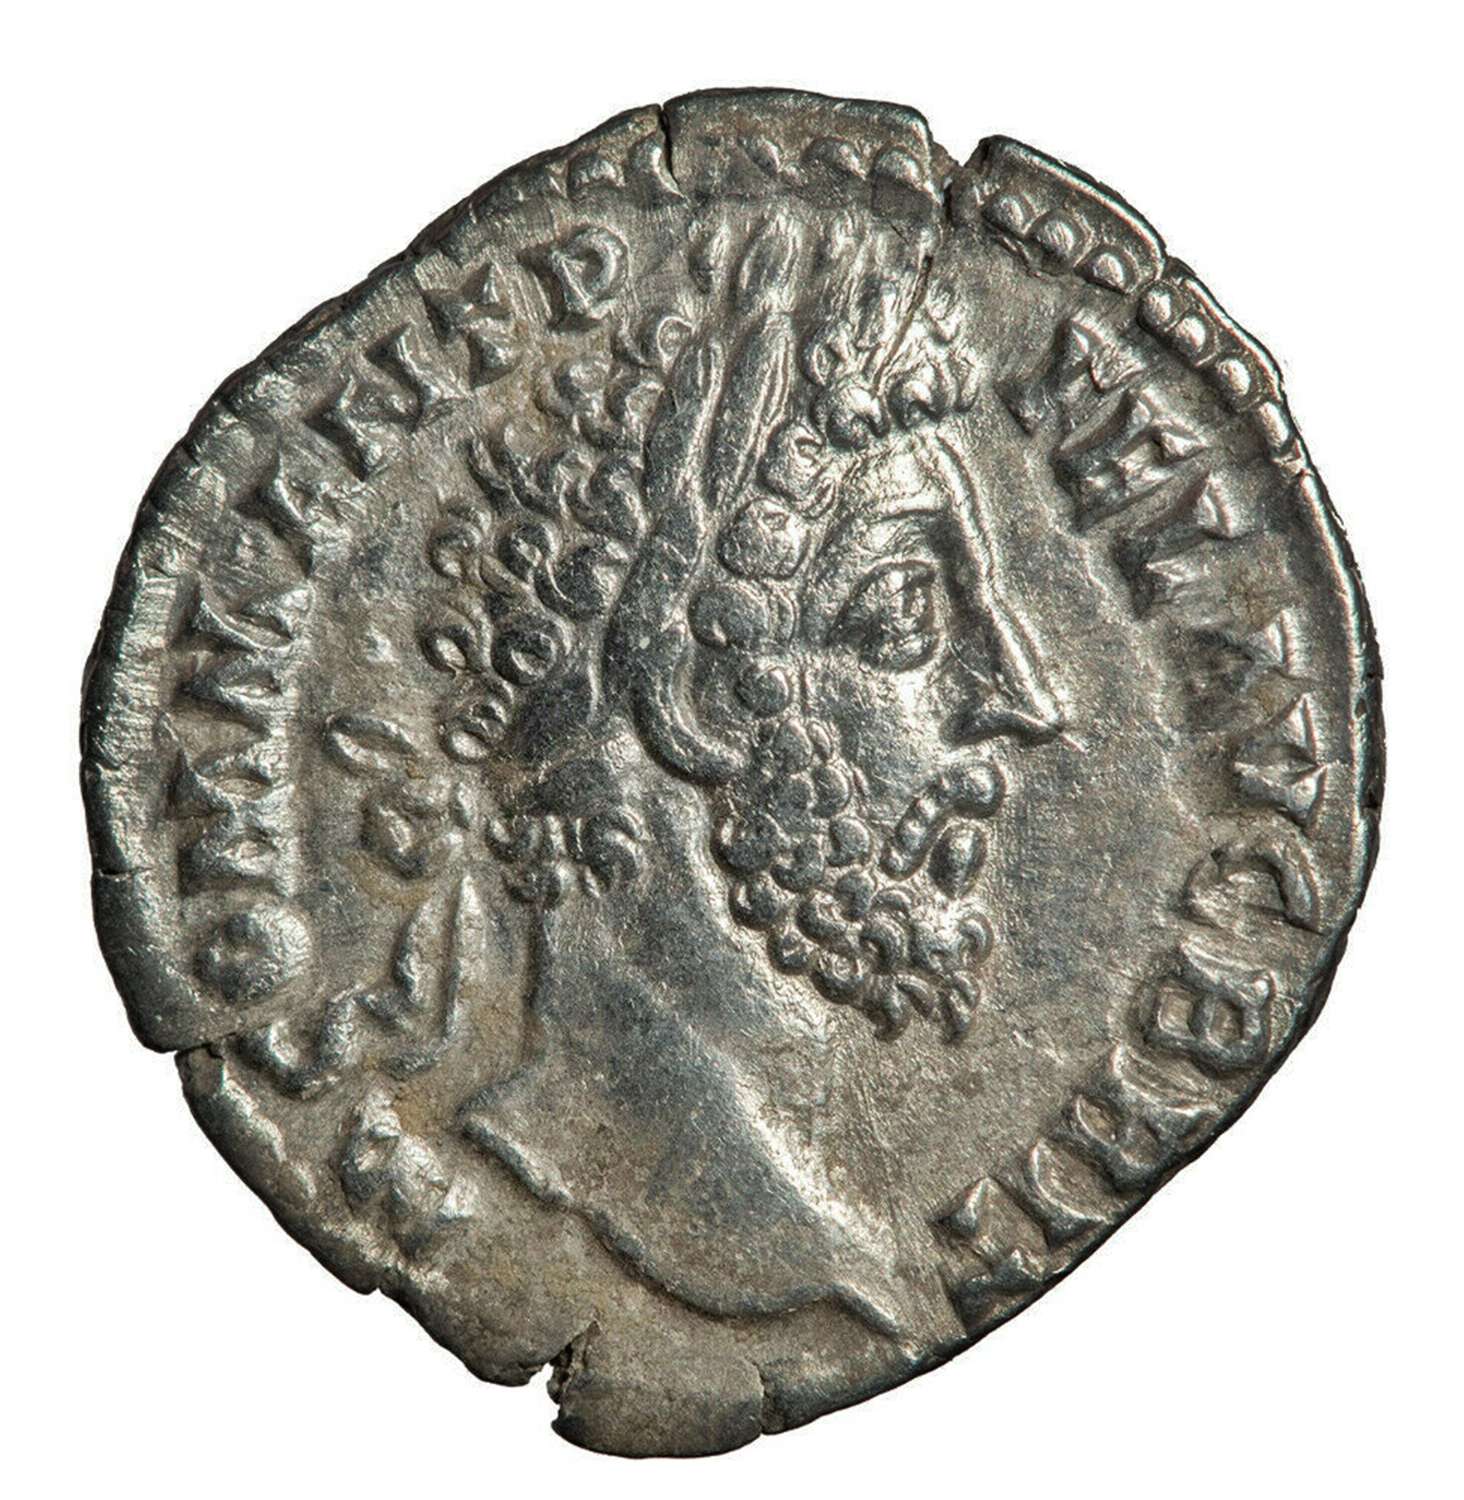 Ancient Roman Silver Denarius of Emperor Commodus